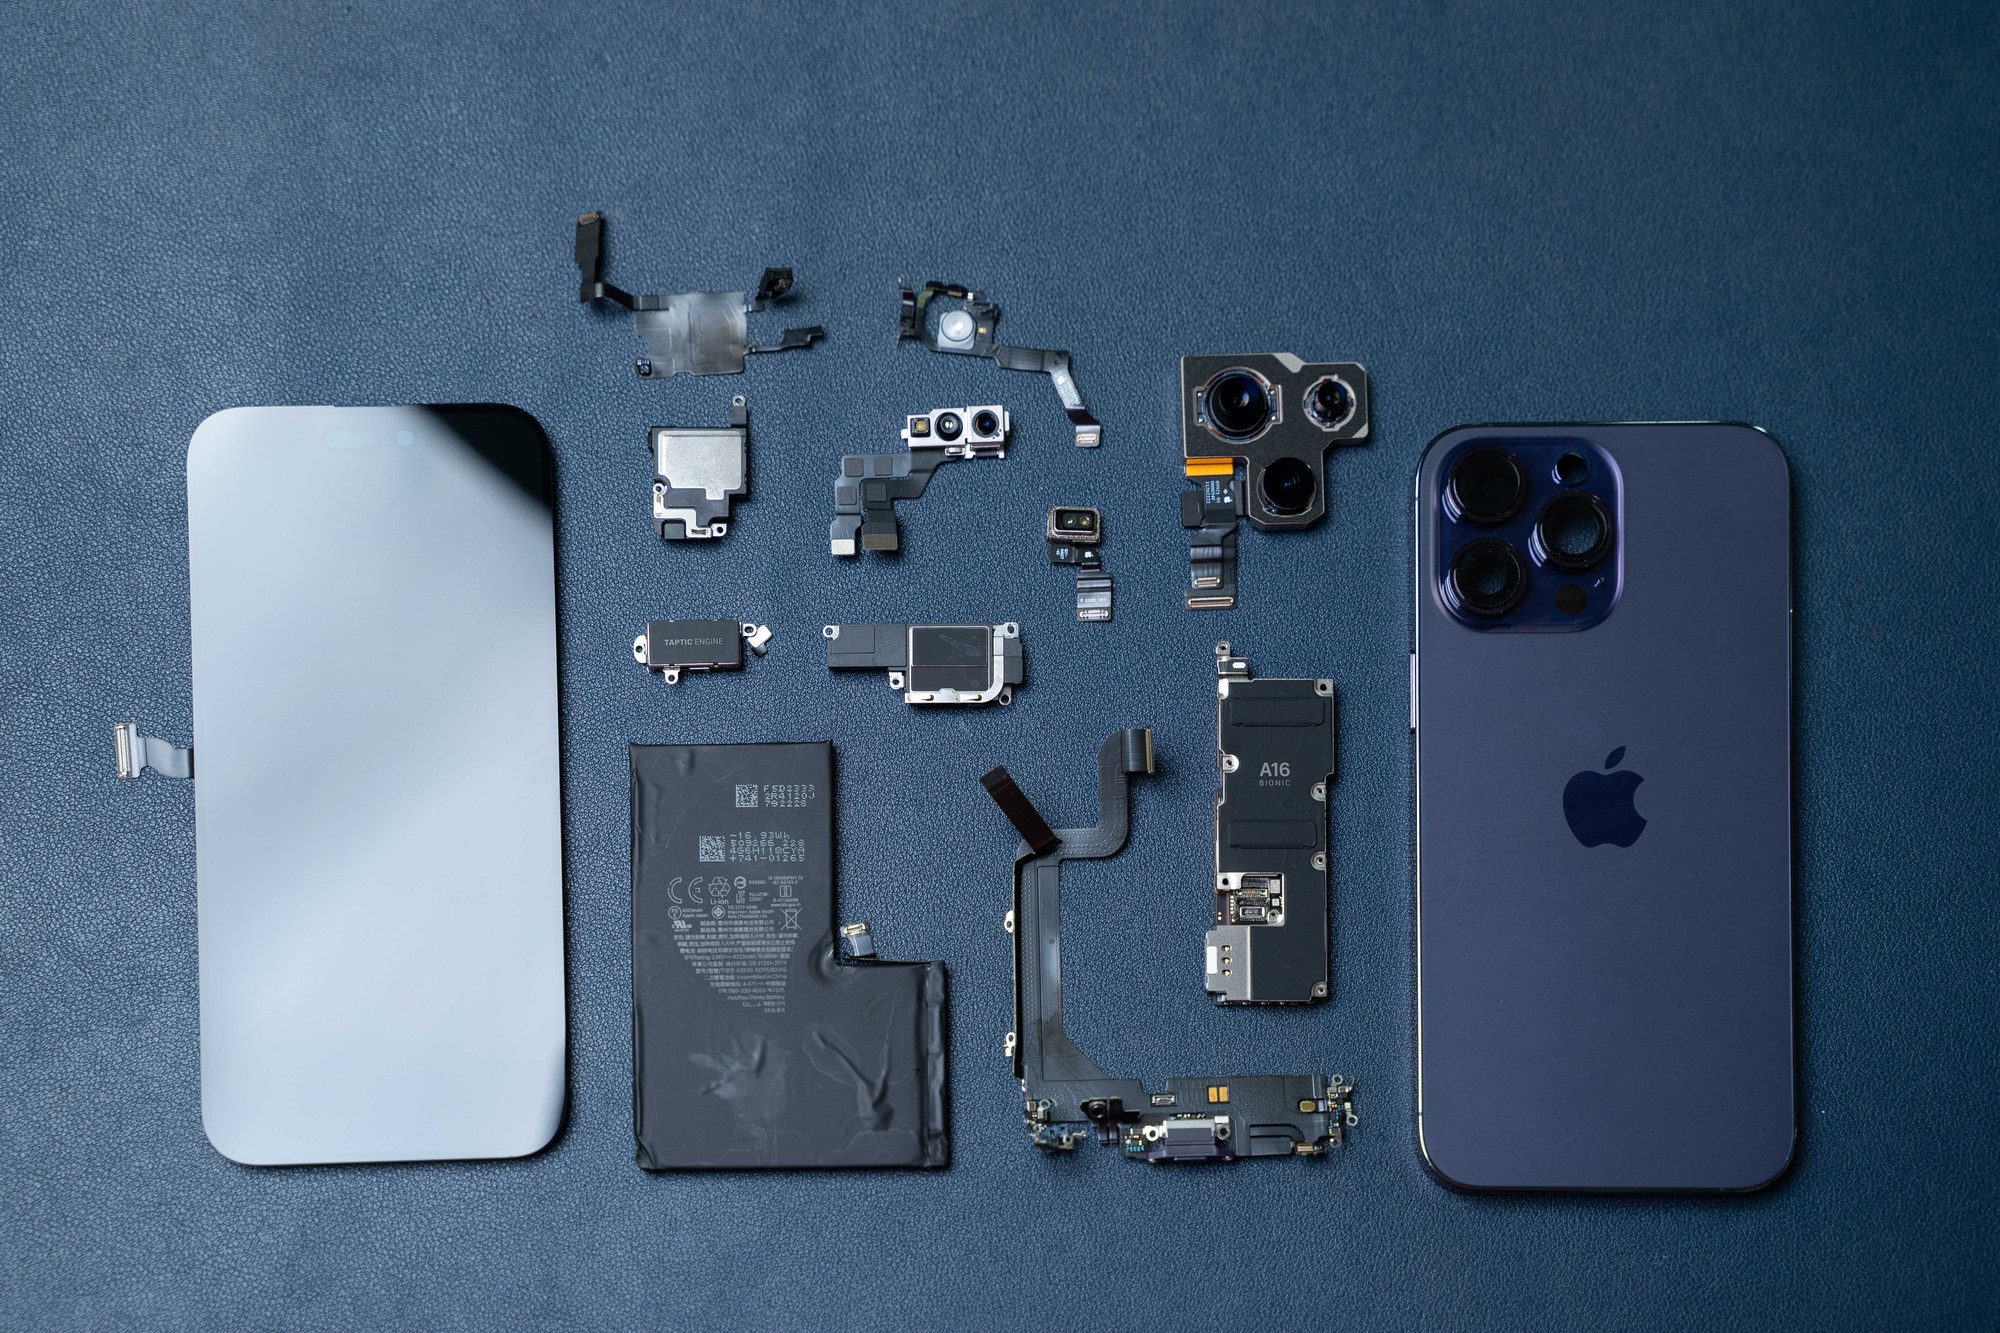 Tháo tung iPhone 14 Pro Max phát hiện chi tiết dễ gặp lỗi và thông số Apple chưa công bố - Ảnh 8.